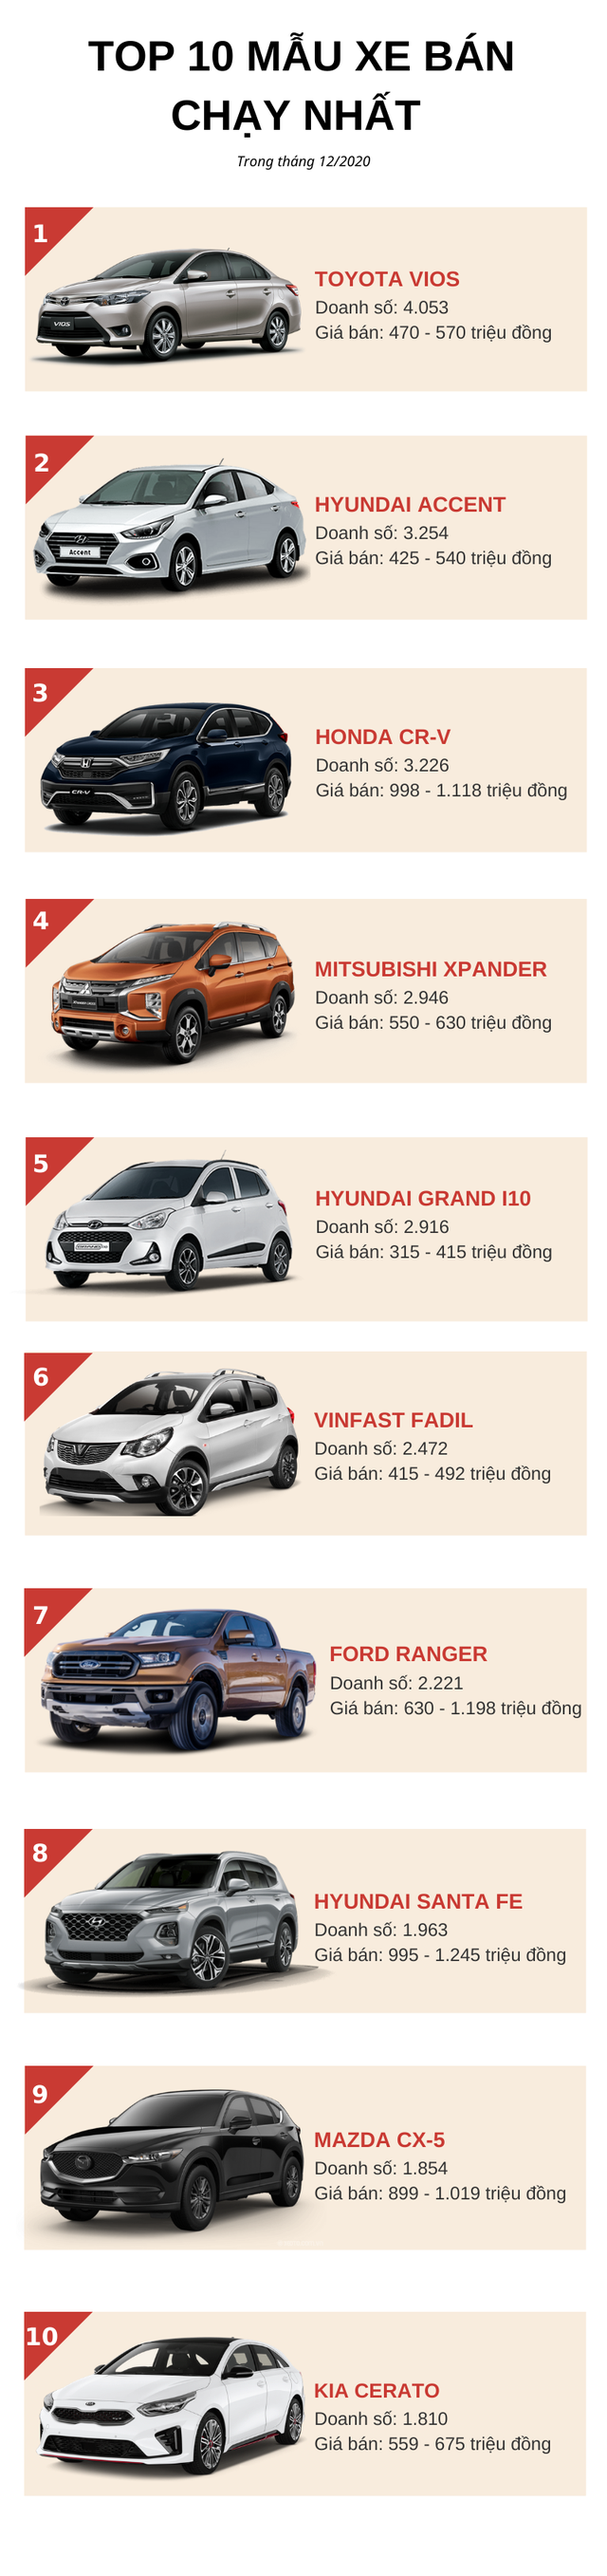 Top 10 ô tô bán chạy nhất tháng 12/2020: Honda CR-V quay trở lại, Hyundai Accent tăng trưởng mạnh  - Ảnh 1.